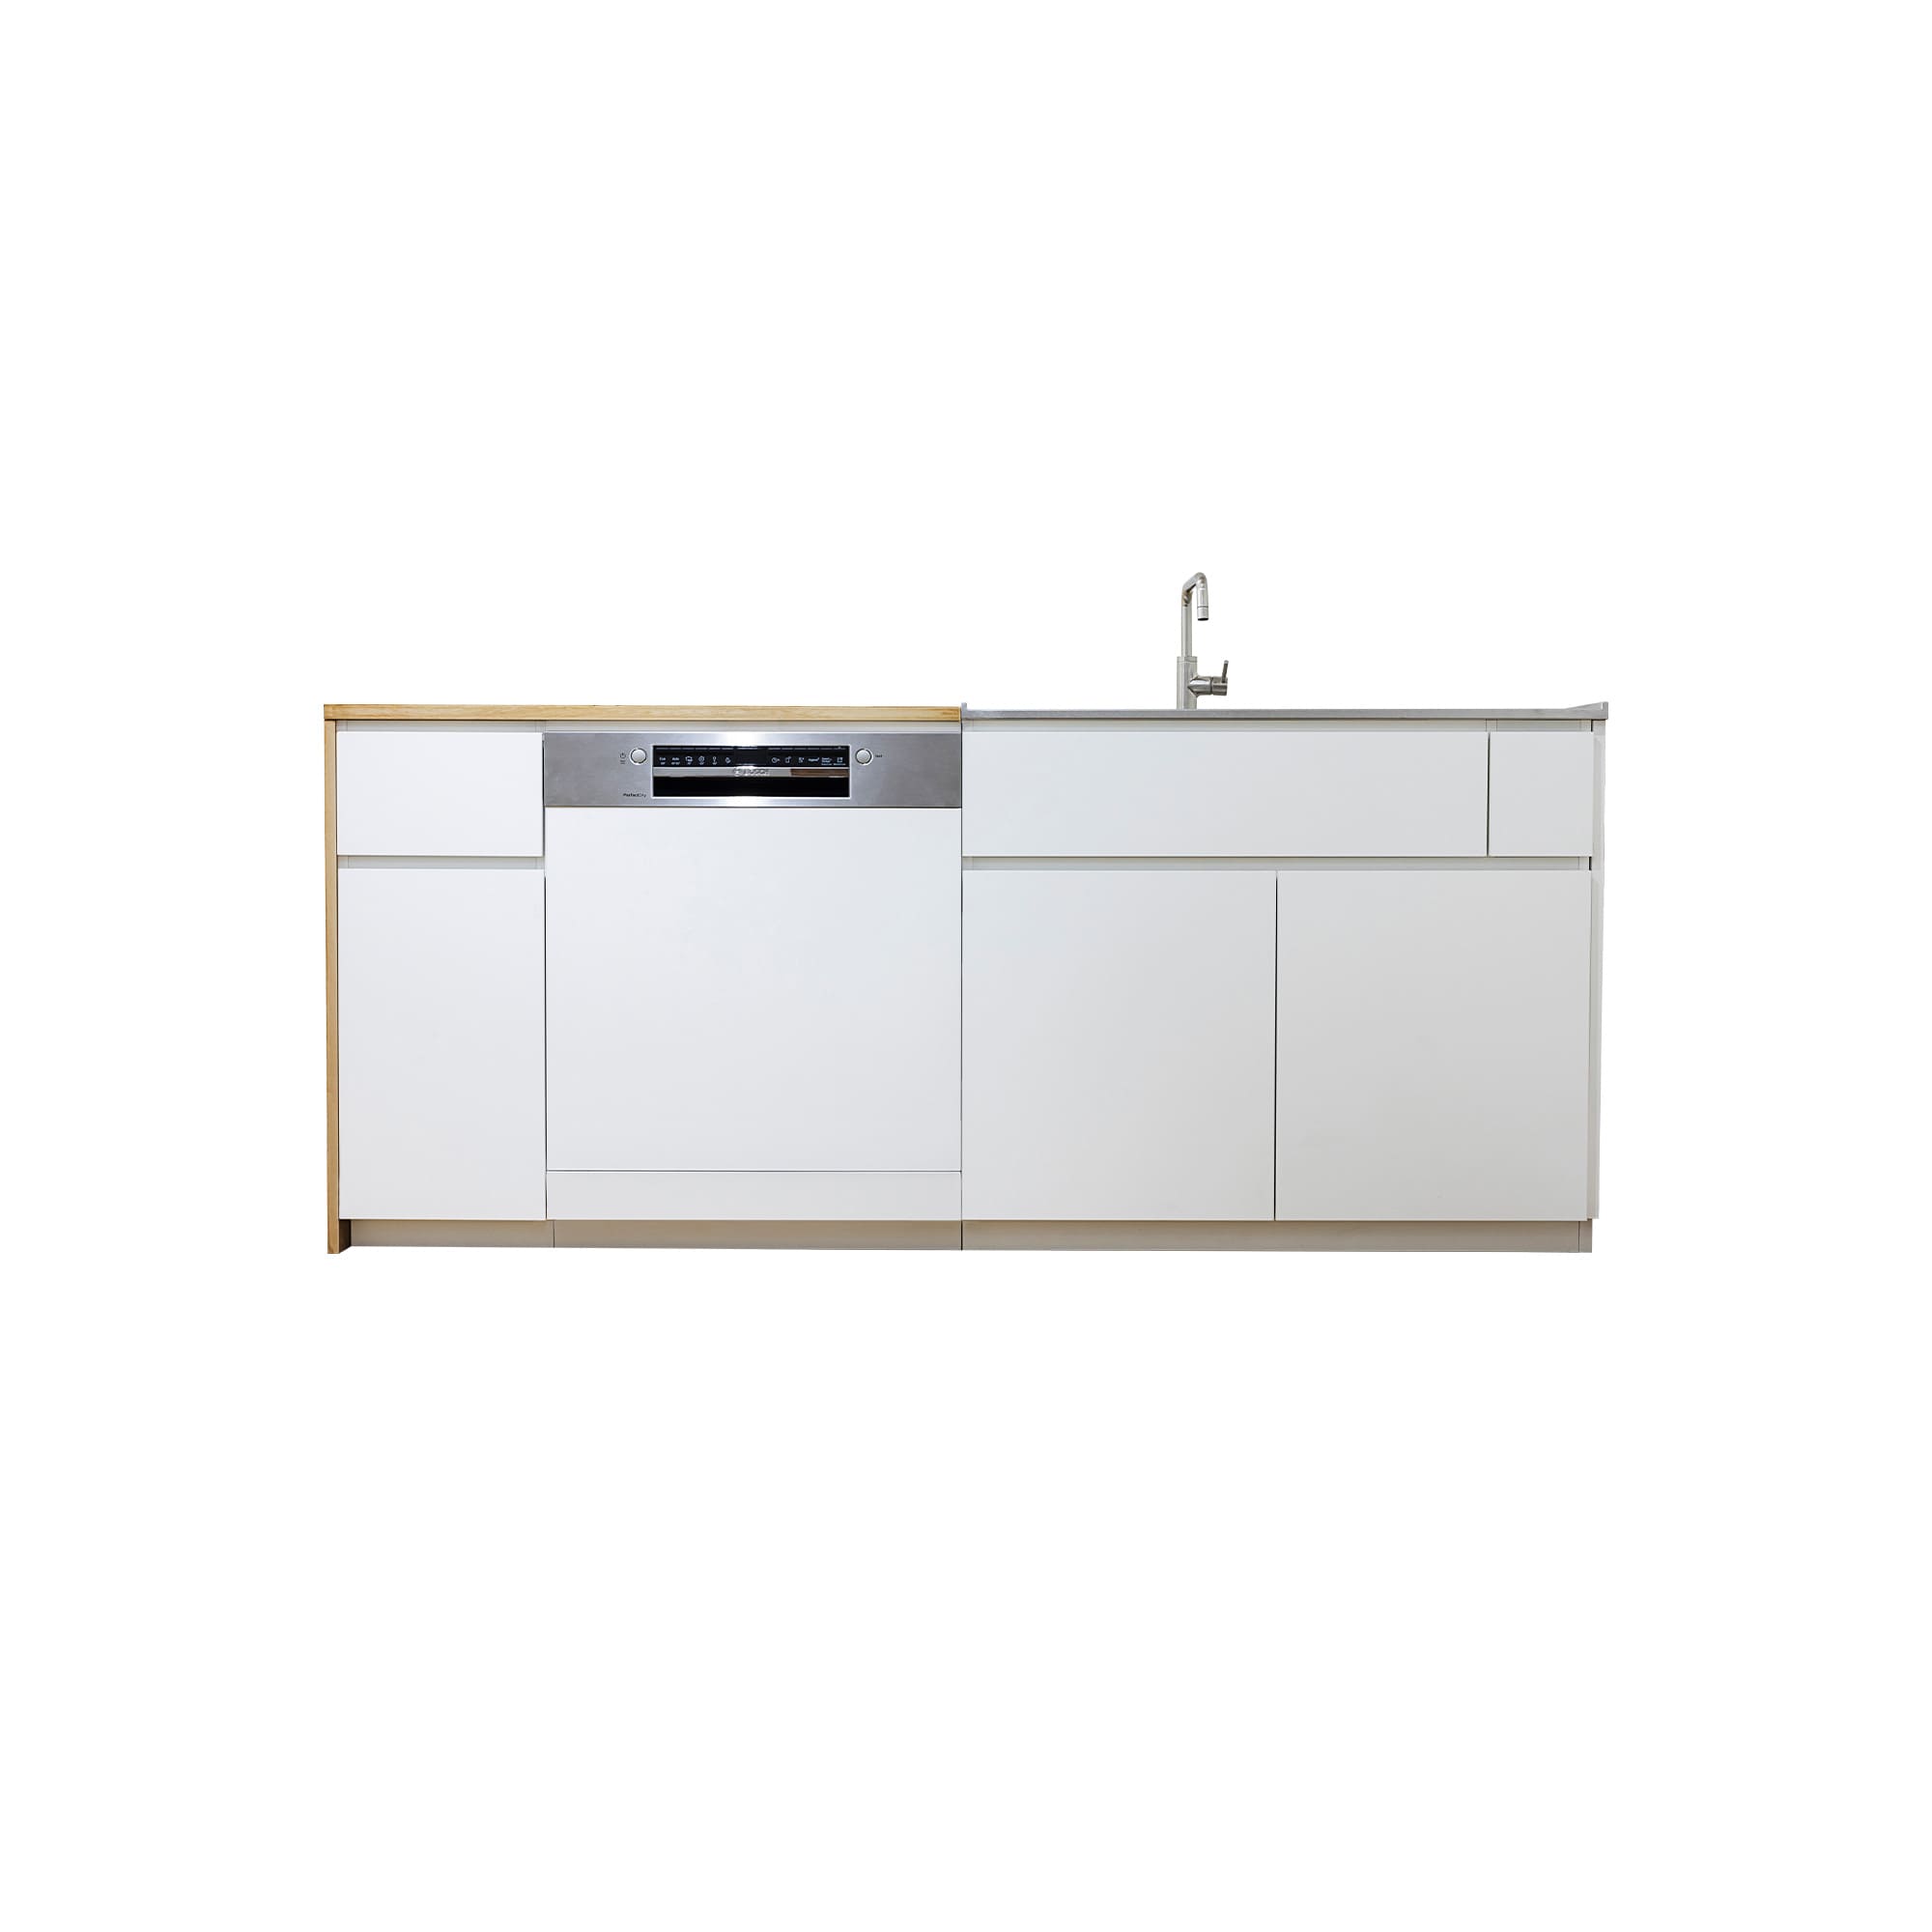 木天板キッチンⅡ型 対面シンク側 フロントオープン食洗機 W600タイプ KB-KC029-04-G183 対面シンク側　※ 別売り品の水栓・食洗機を設置した時のイメージです